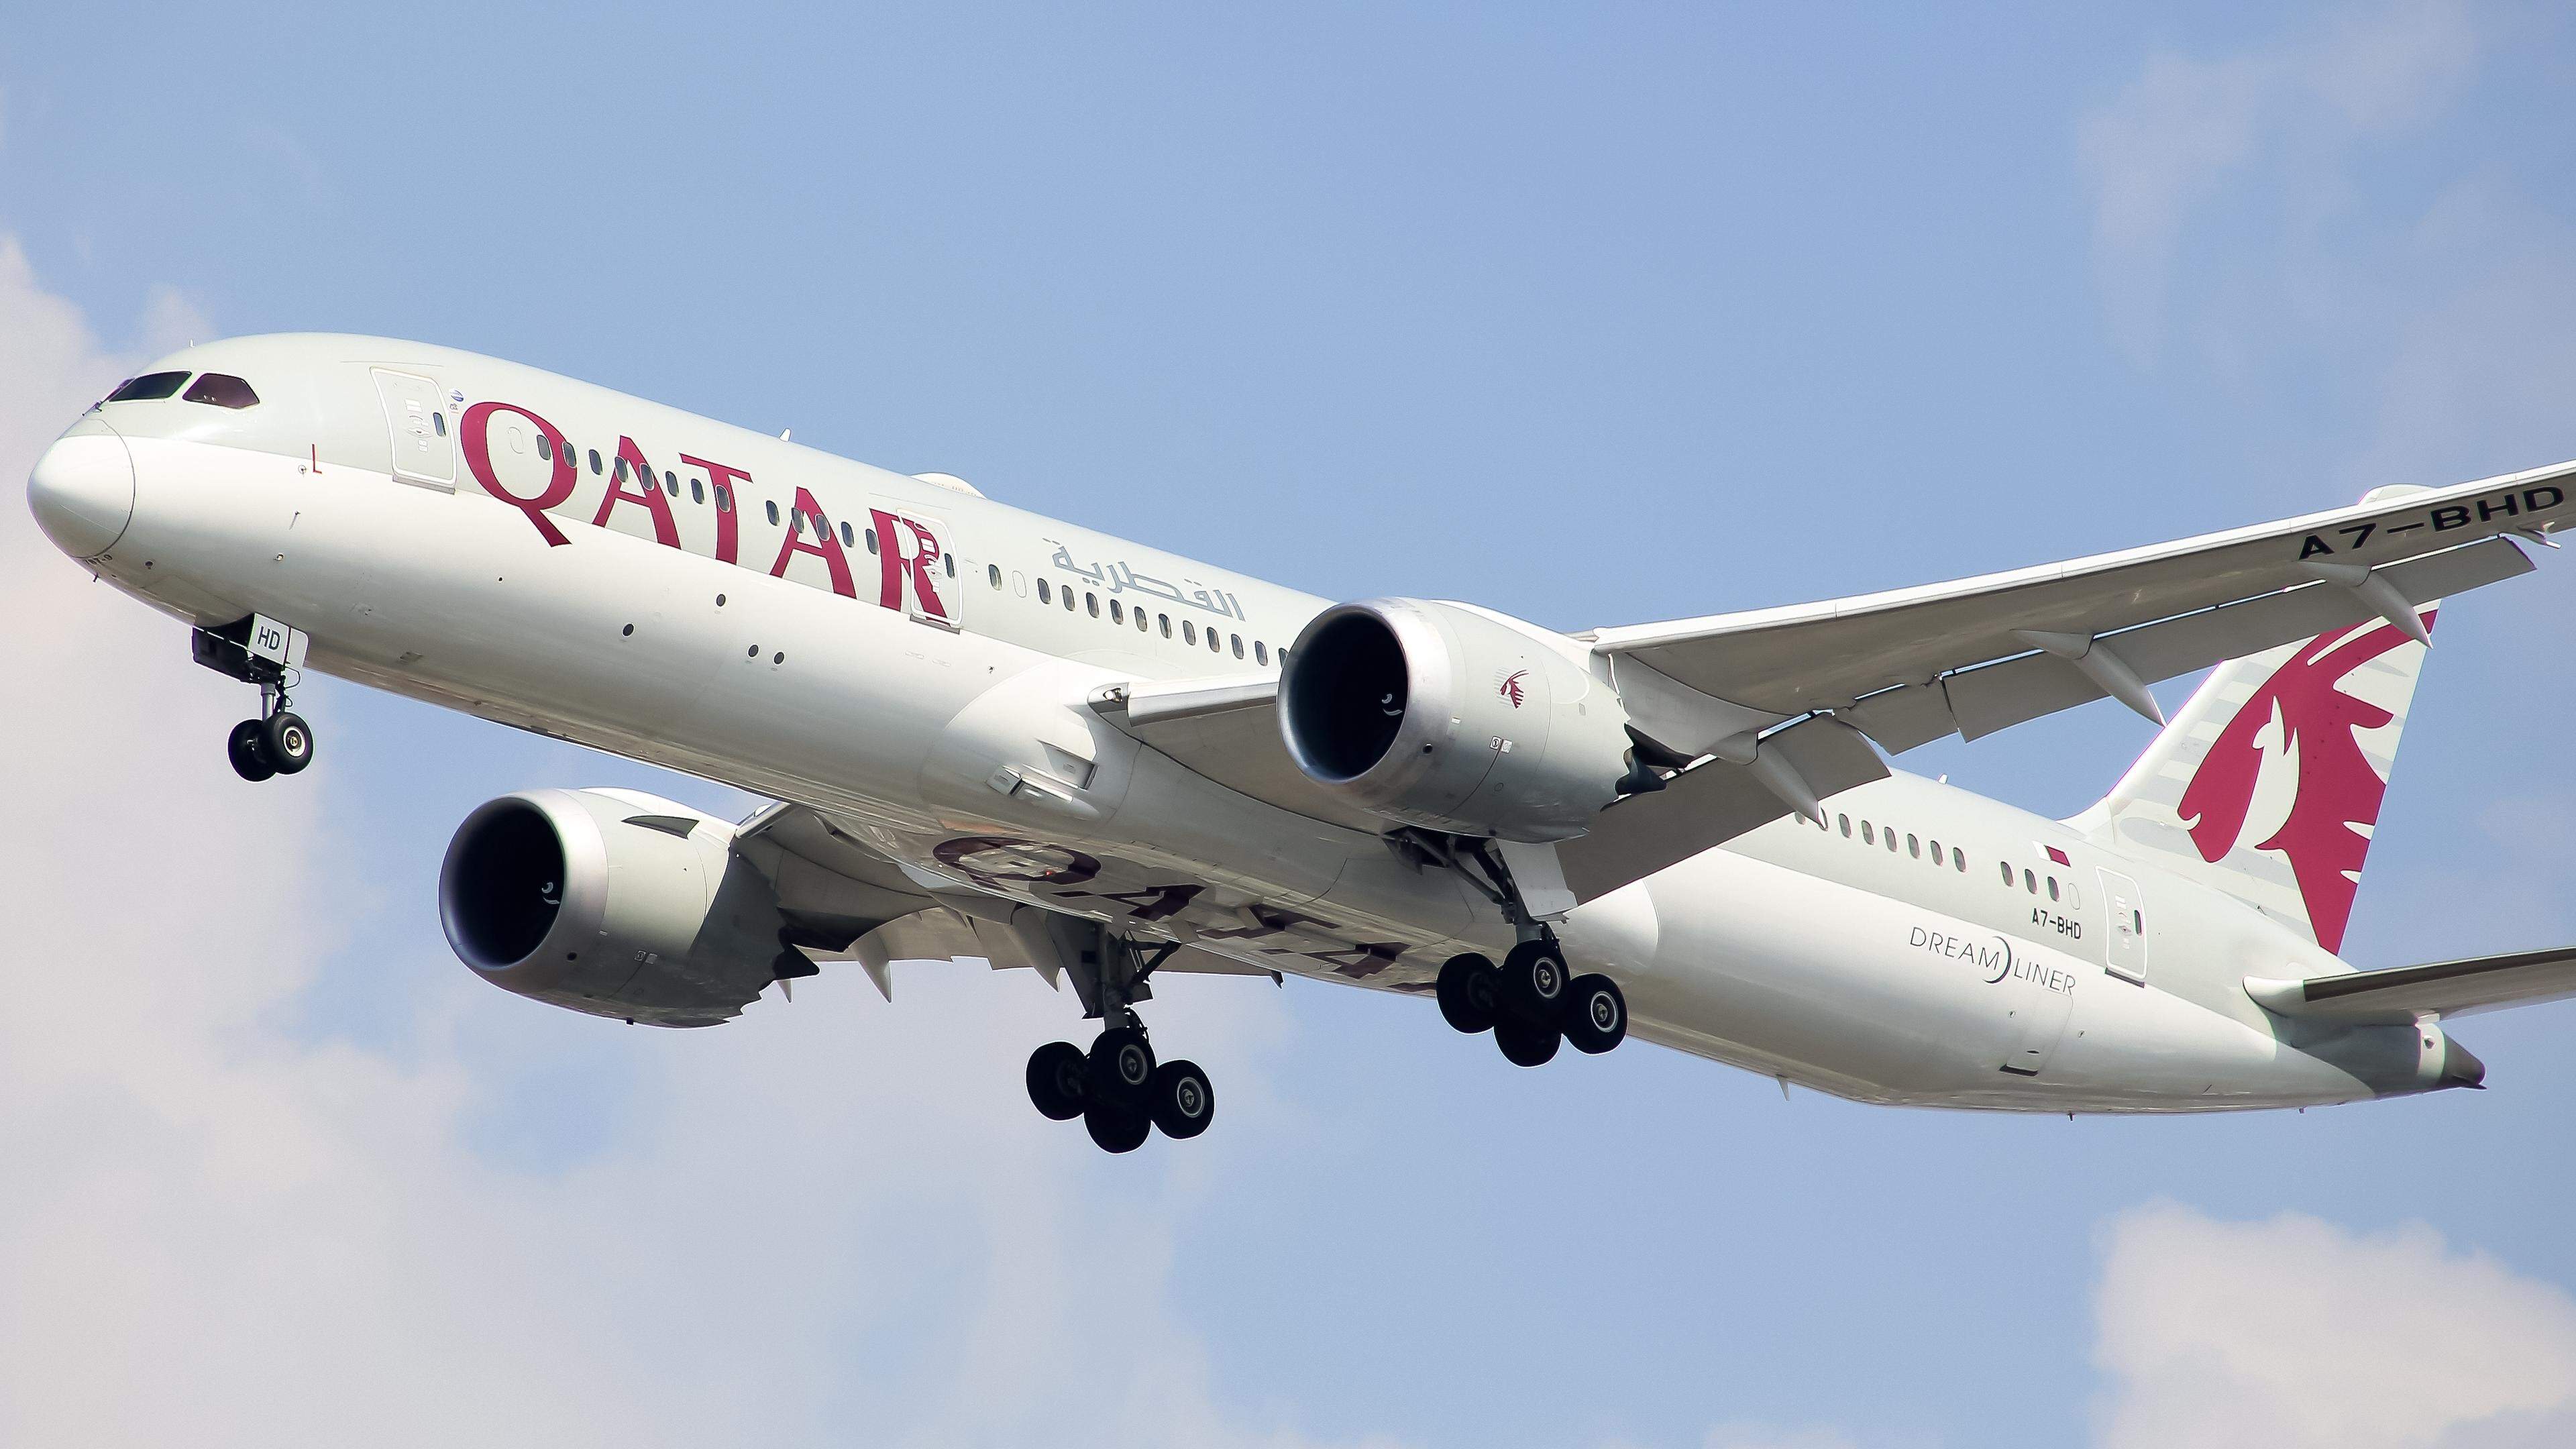 Les turbulences ont eu lieu lorsque l’appareil de Qatar Airways survolait la Turquie.